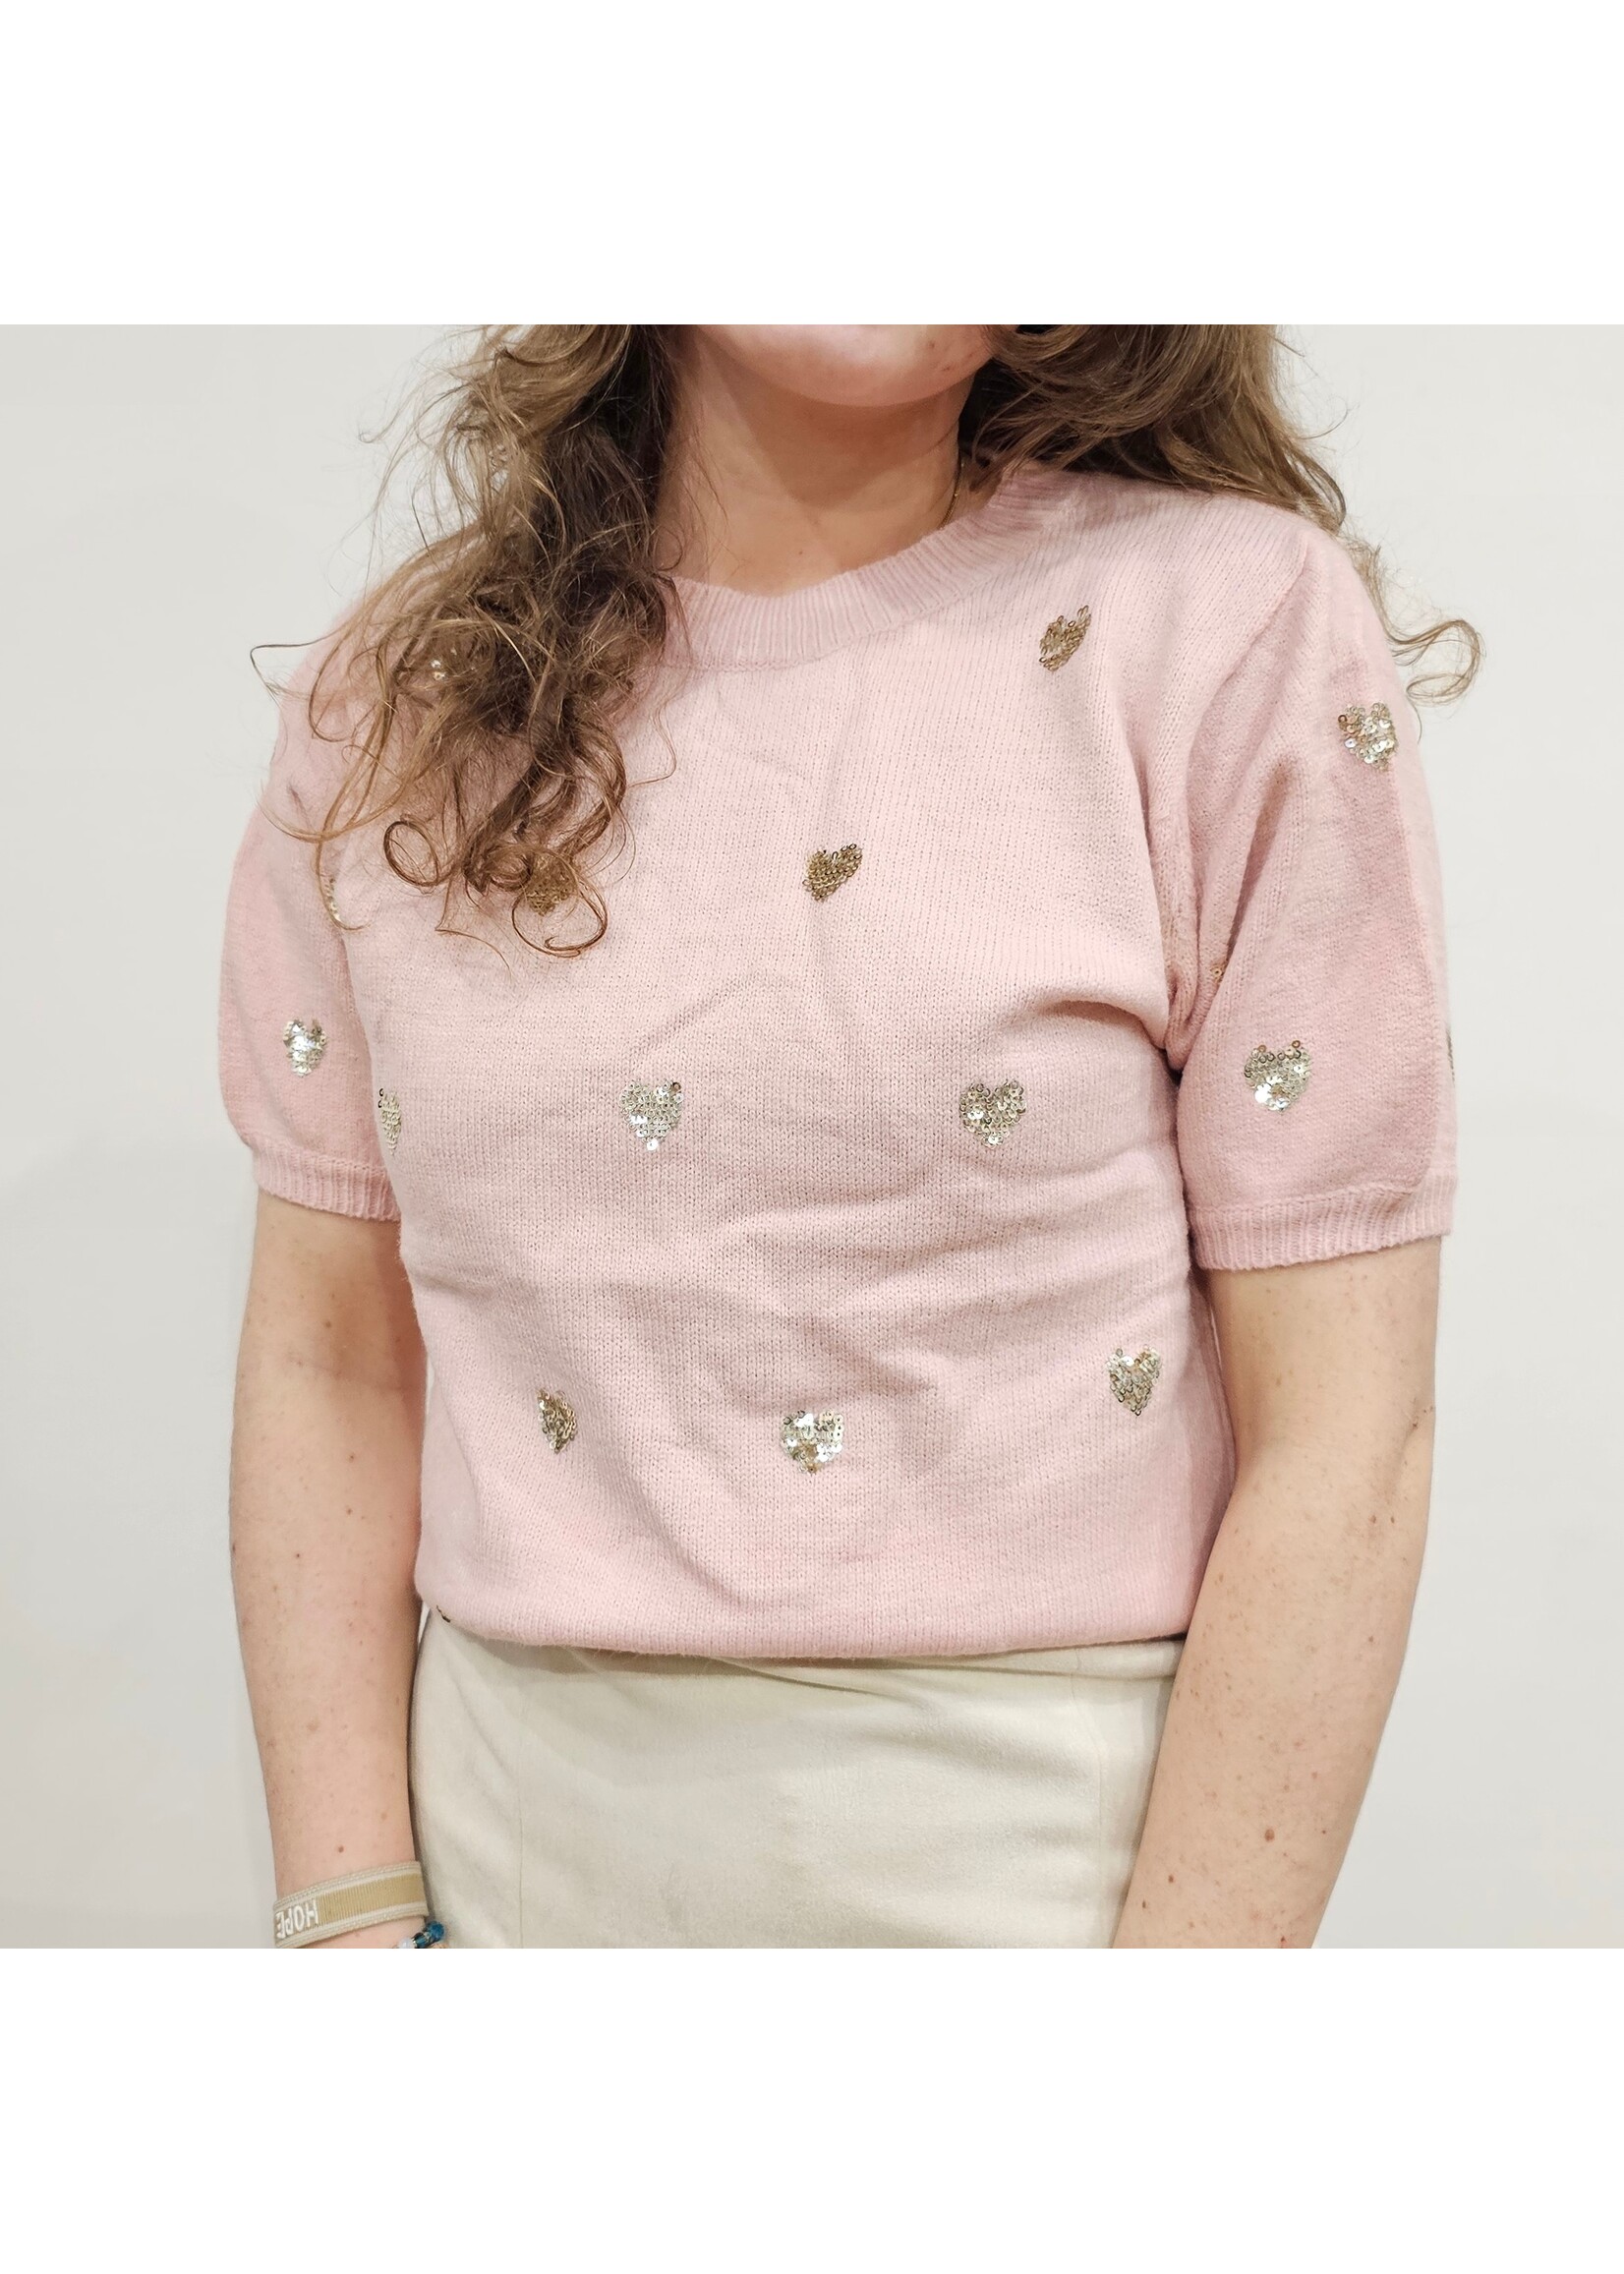 Flamant Rose Knitwear top Roze hartjes